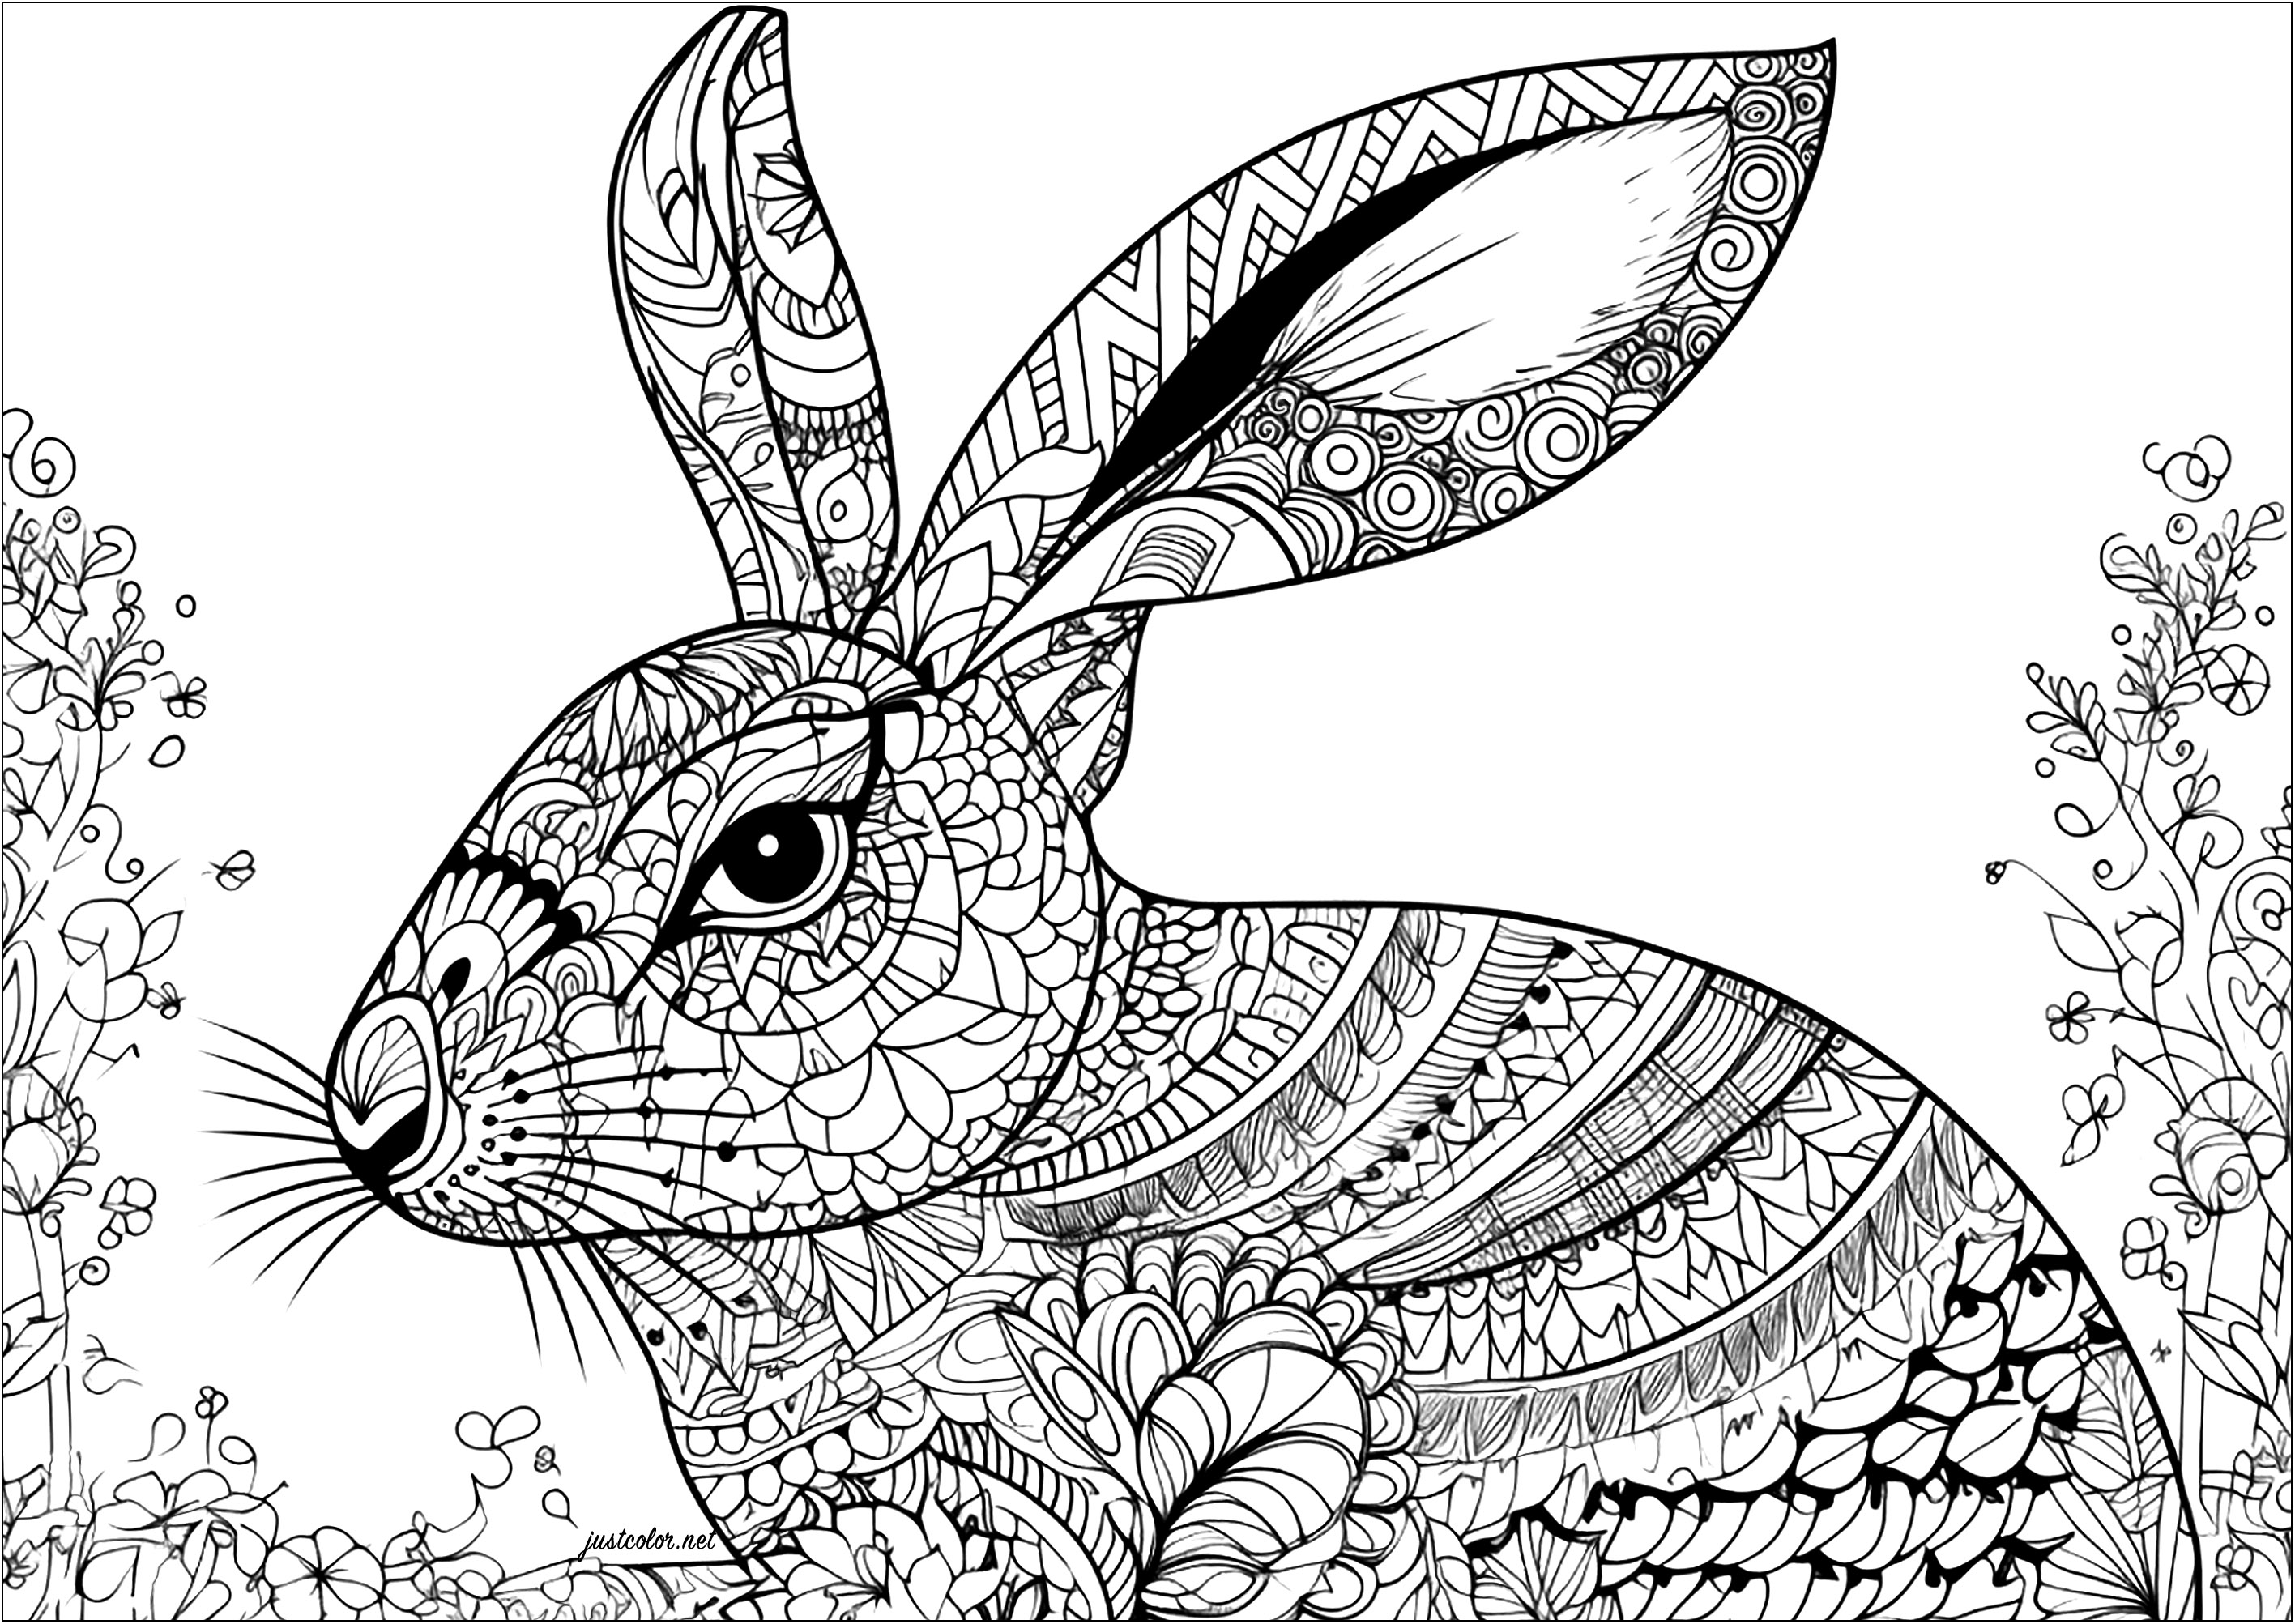 Lapin et motifs complexes. Un magnifique coloriage de lapin comportant de magnifiques motifs complexes et diversifiés. Ce coloriage vous prendra beaucoup de temps mais vous procurera un apaisement optimal.